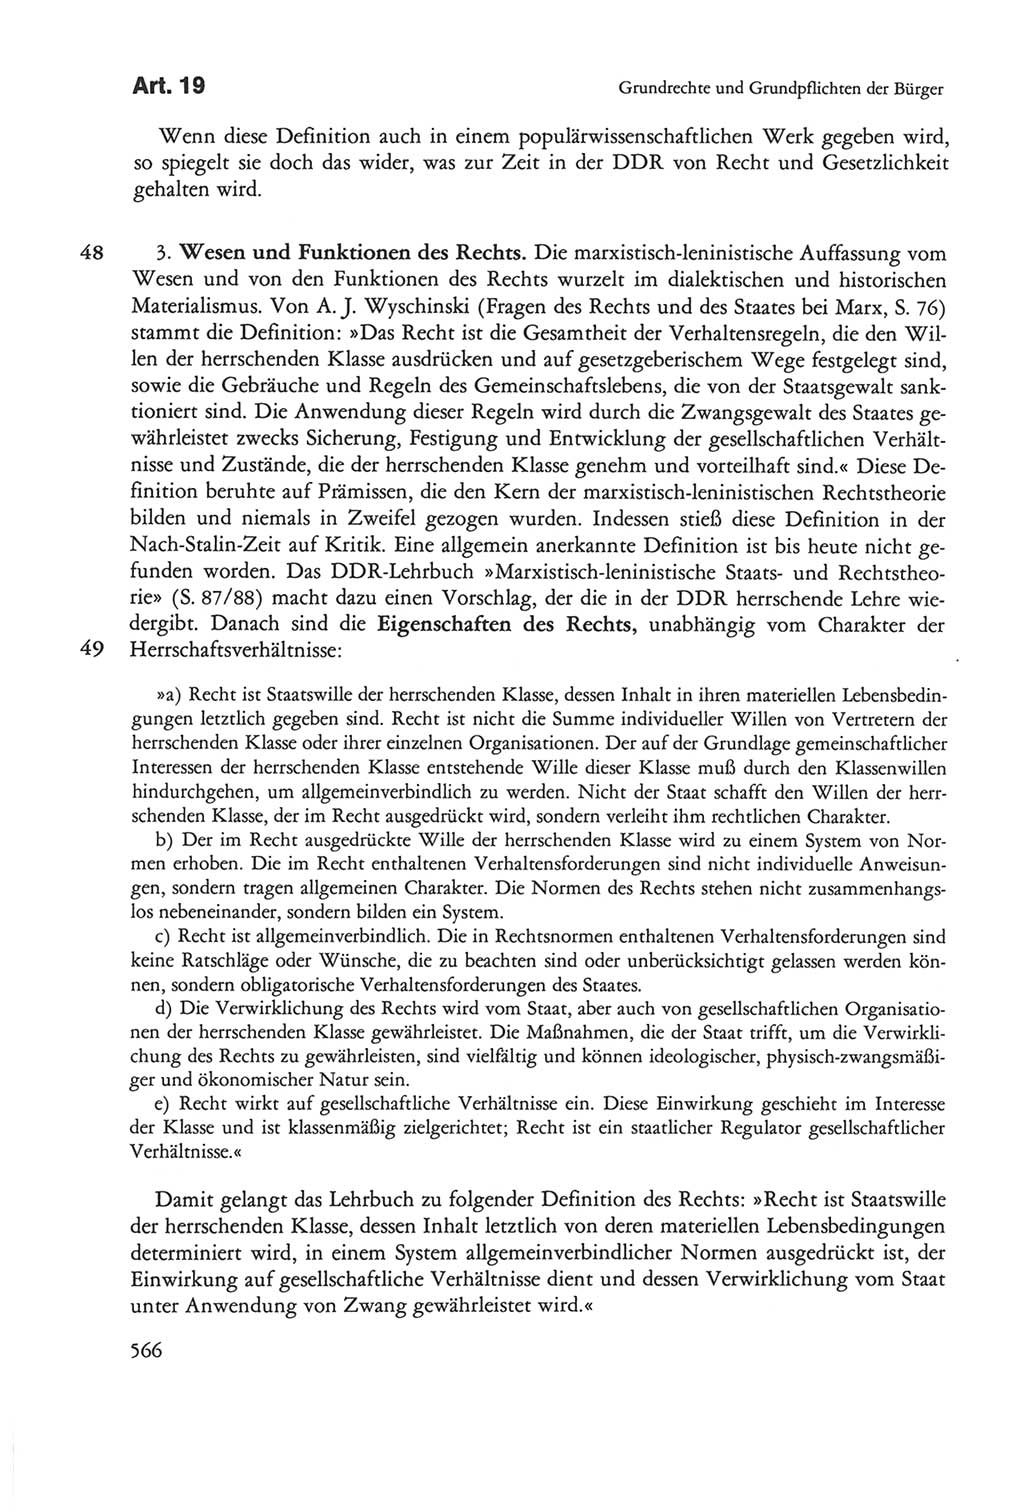 Die sozialistische Verfassung der Deutschen Demokratischen Republik (DDR), Kommentar 1982, Seite 566 (Soz. Verf. DDR Komm. 1982, S. 566)